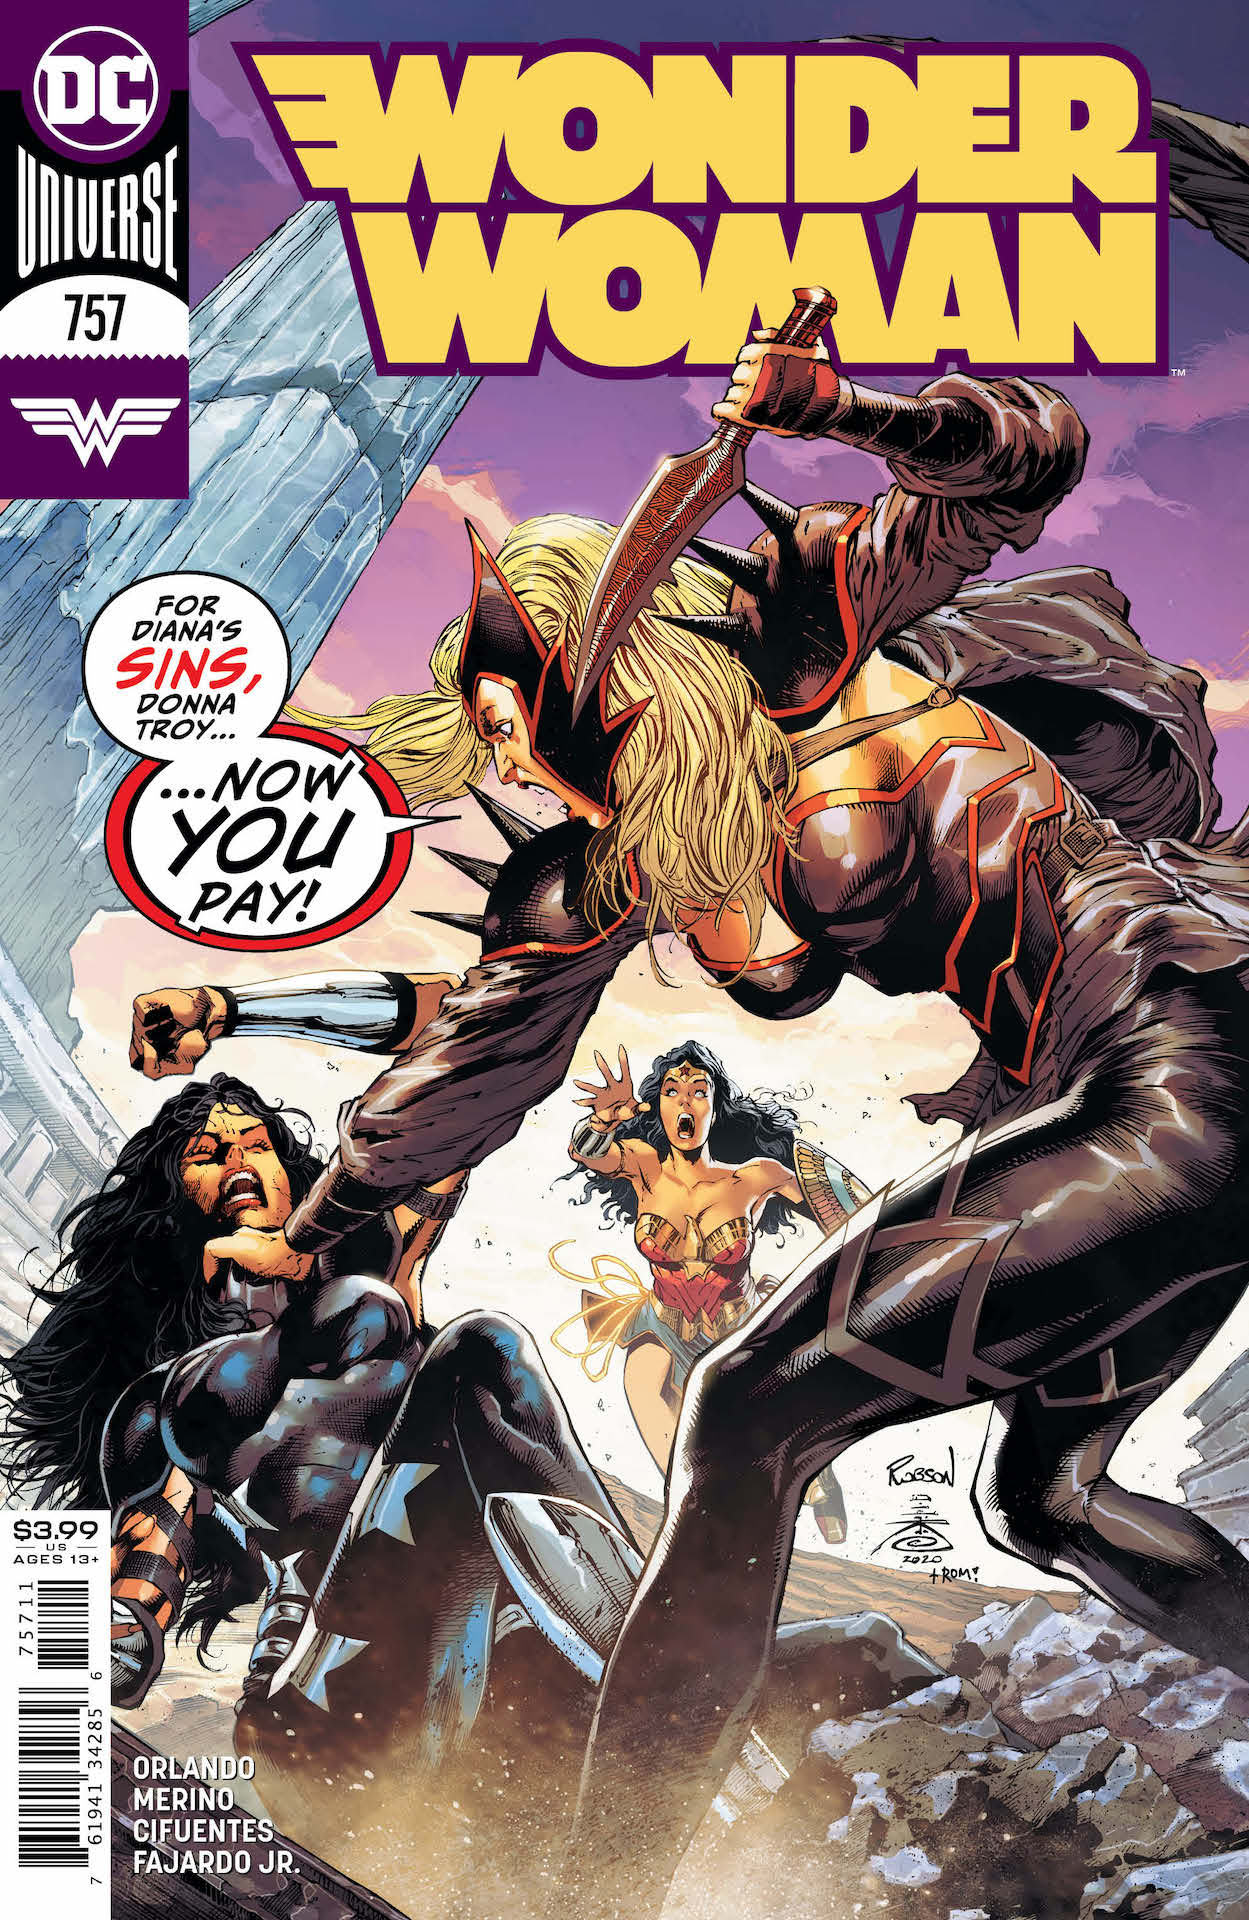 DC Preview: Wonder Woman #757